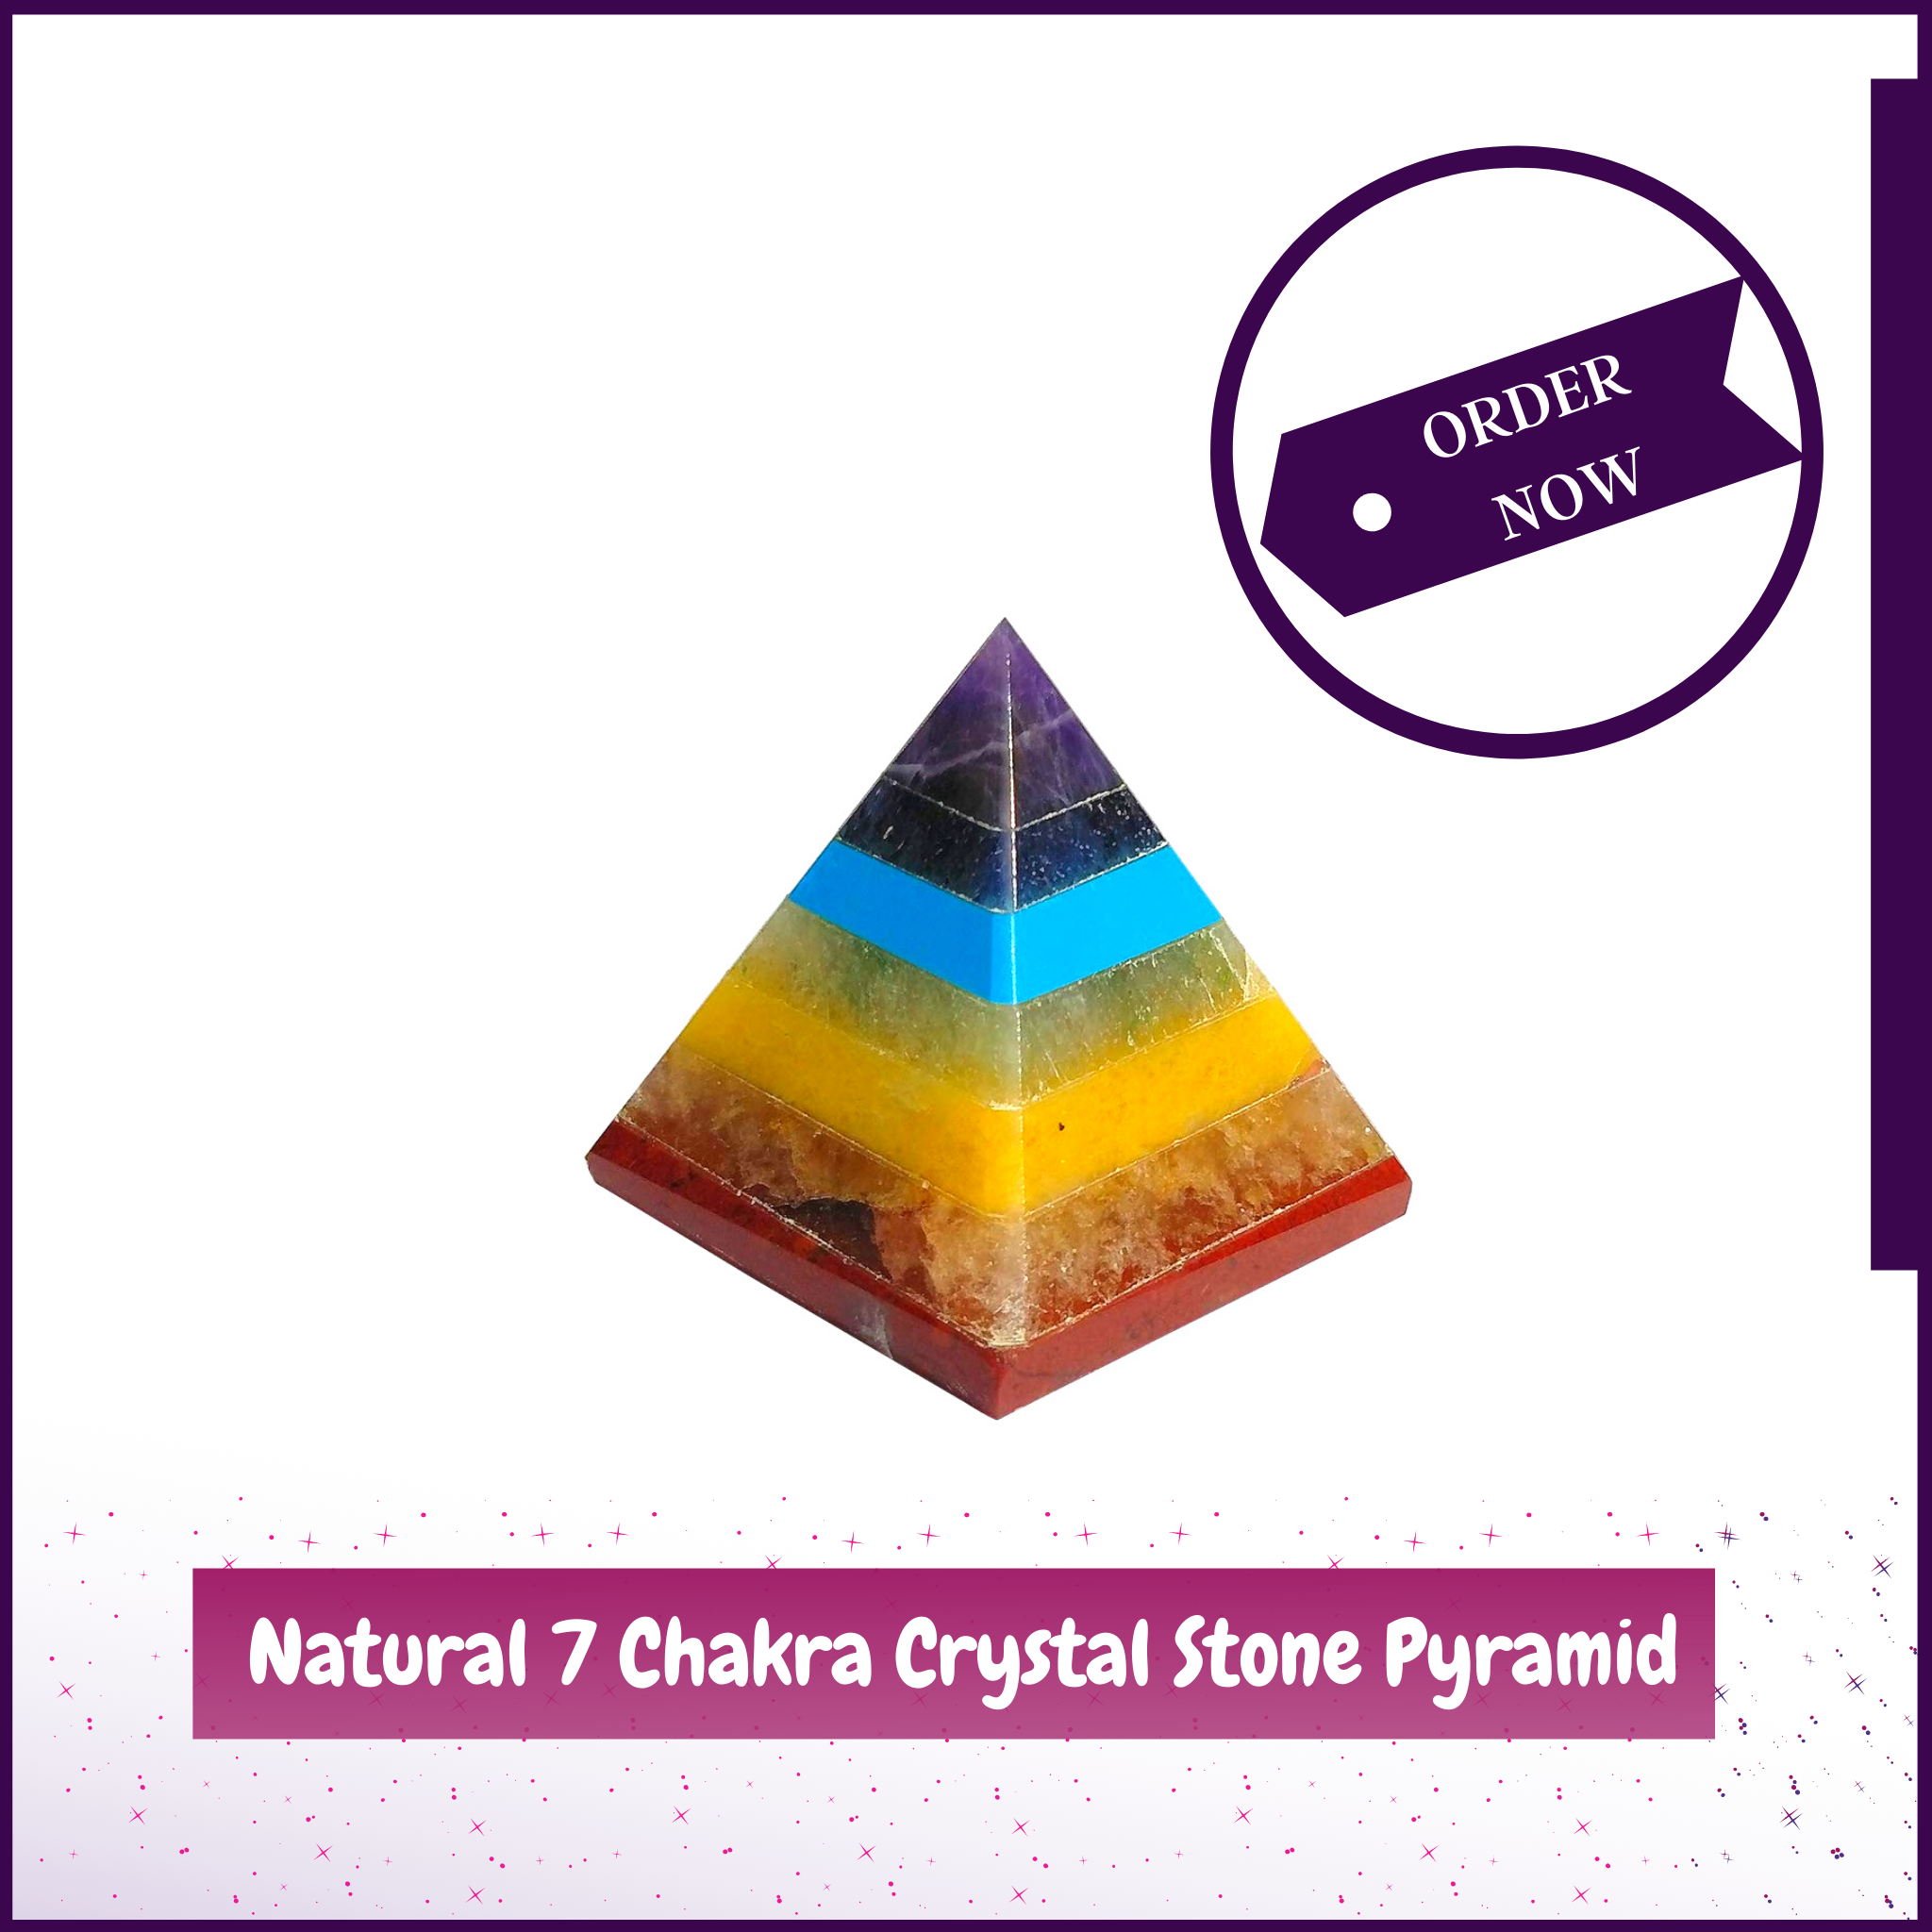 Natural 7 Chakra Pyramid Crystal Stone Pyramid (2inch) for Enhancing Physical, Spiritual and Emotional states - 51pyramids